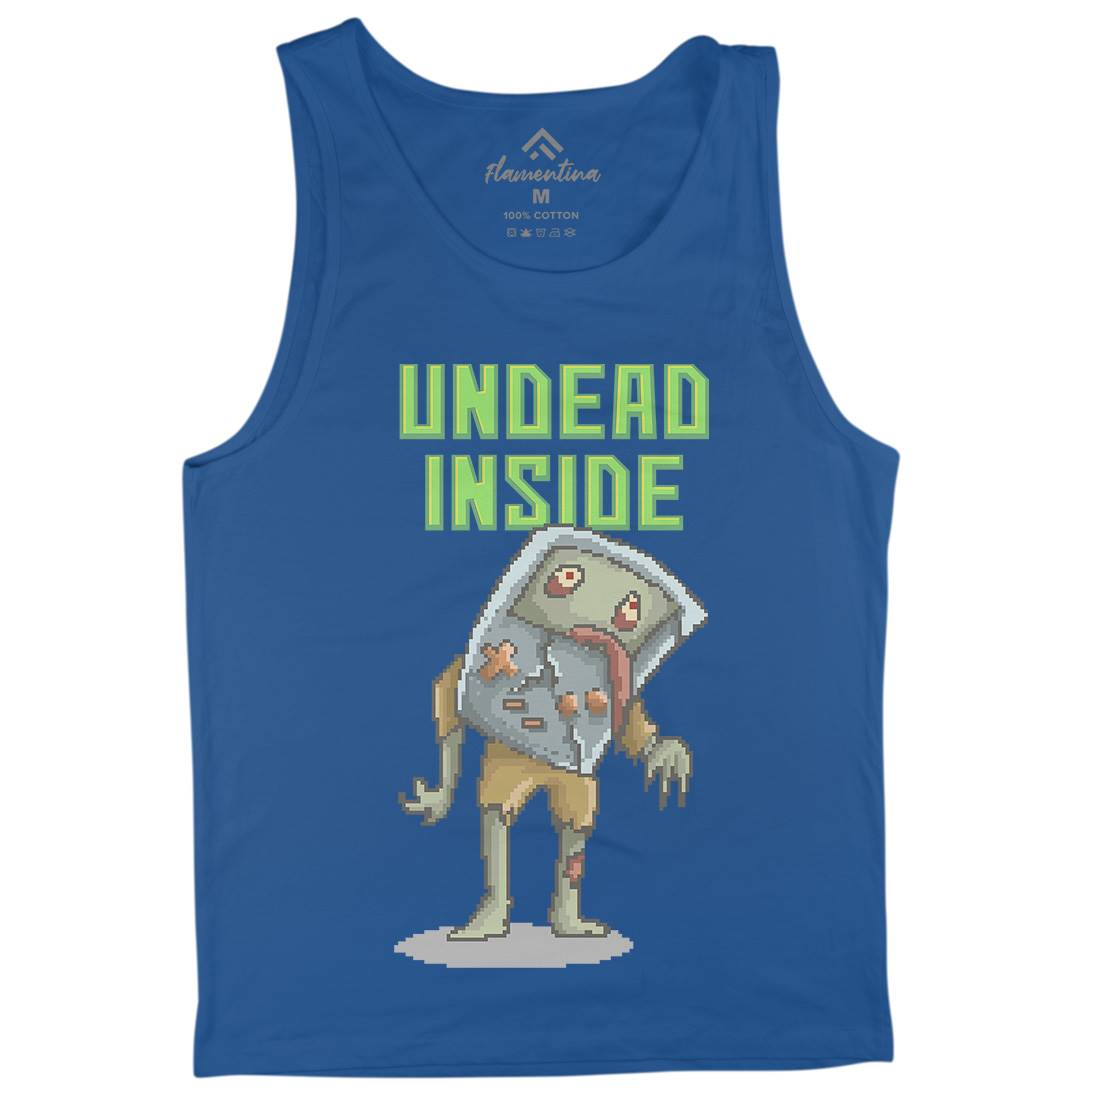 Undead Inside Mens Tank Top Vest Geek B973